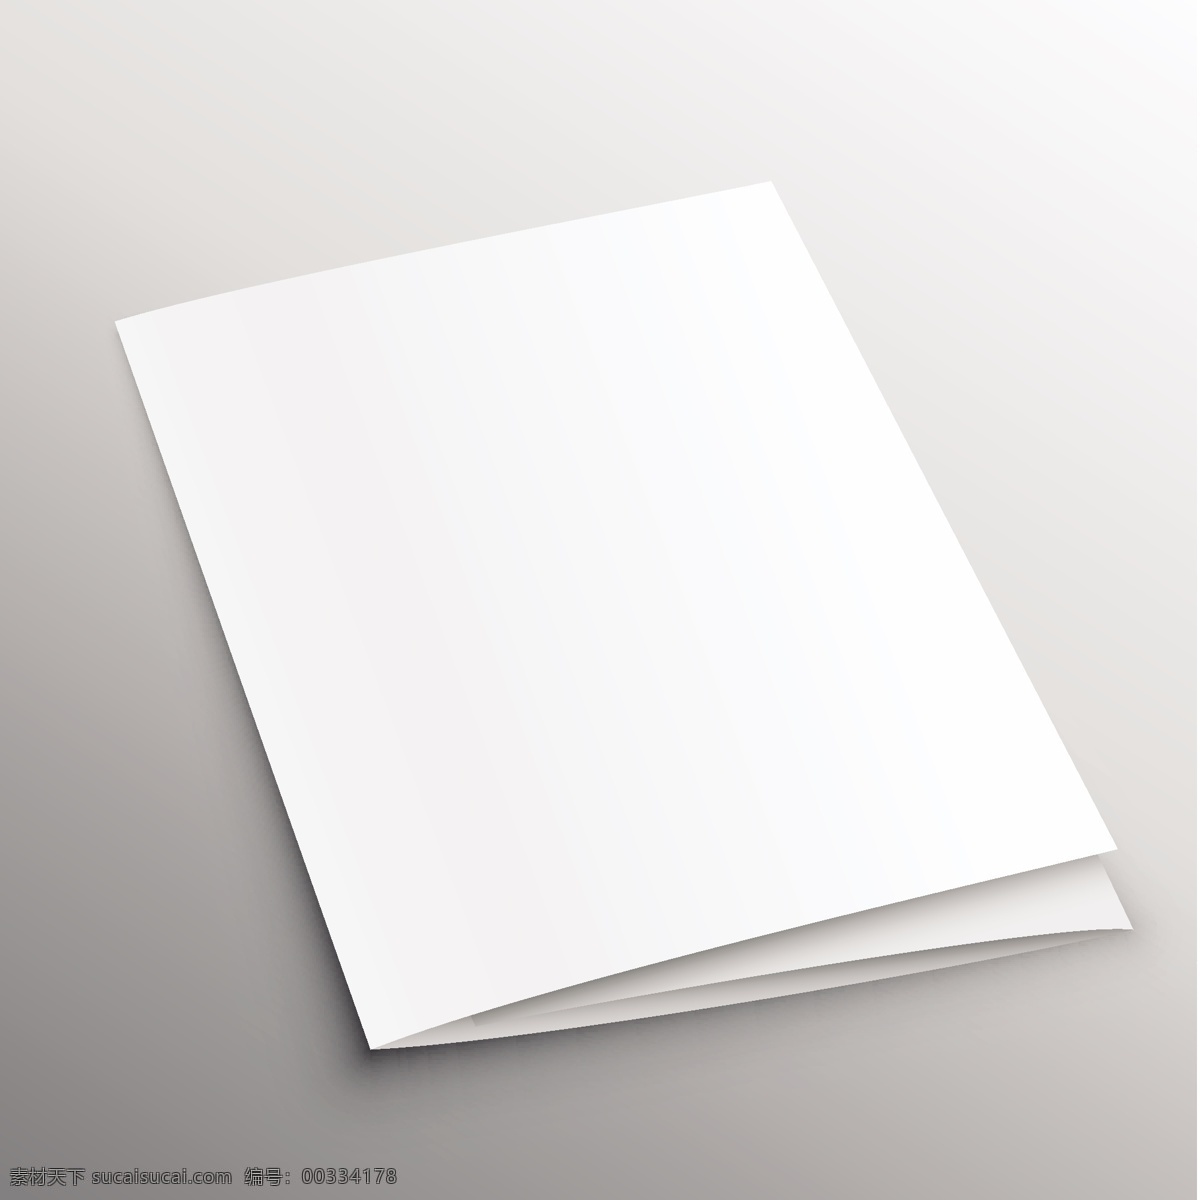 杂志关闭 模拟 小册子 样机 卡 模板 纸张 空间 传单 网站 演示 优雅 白色 灰色 阴影显示 指南 空白的 现实的 折叠 空